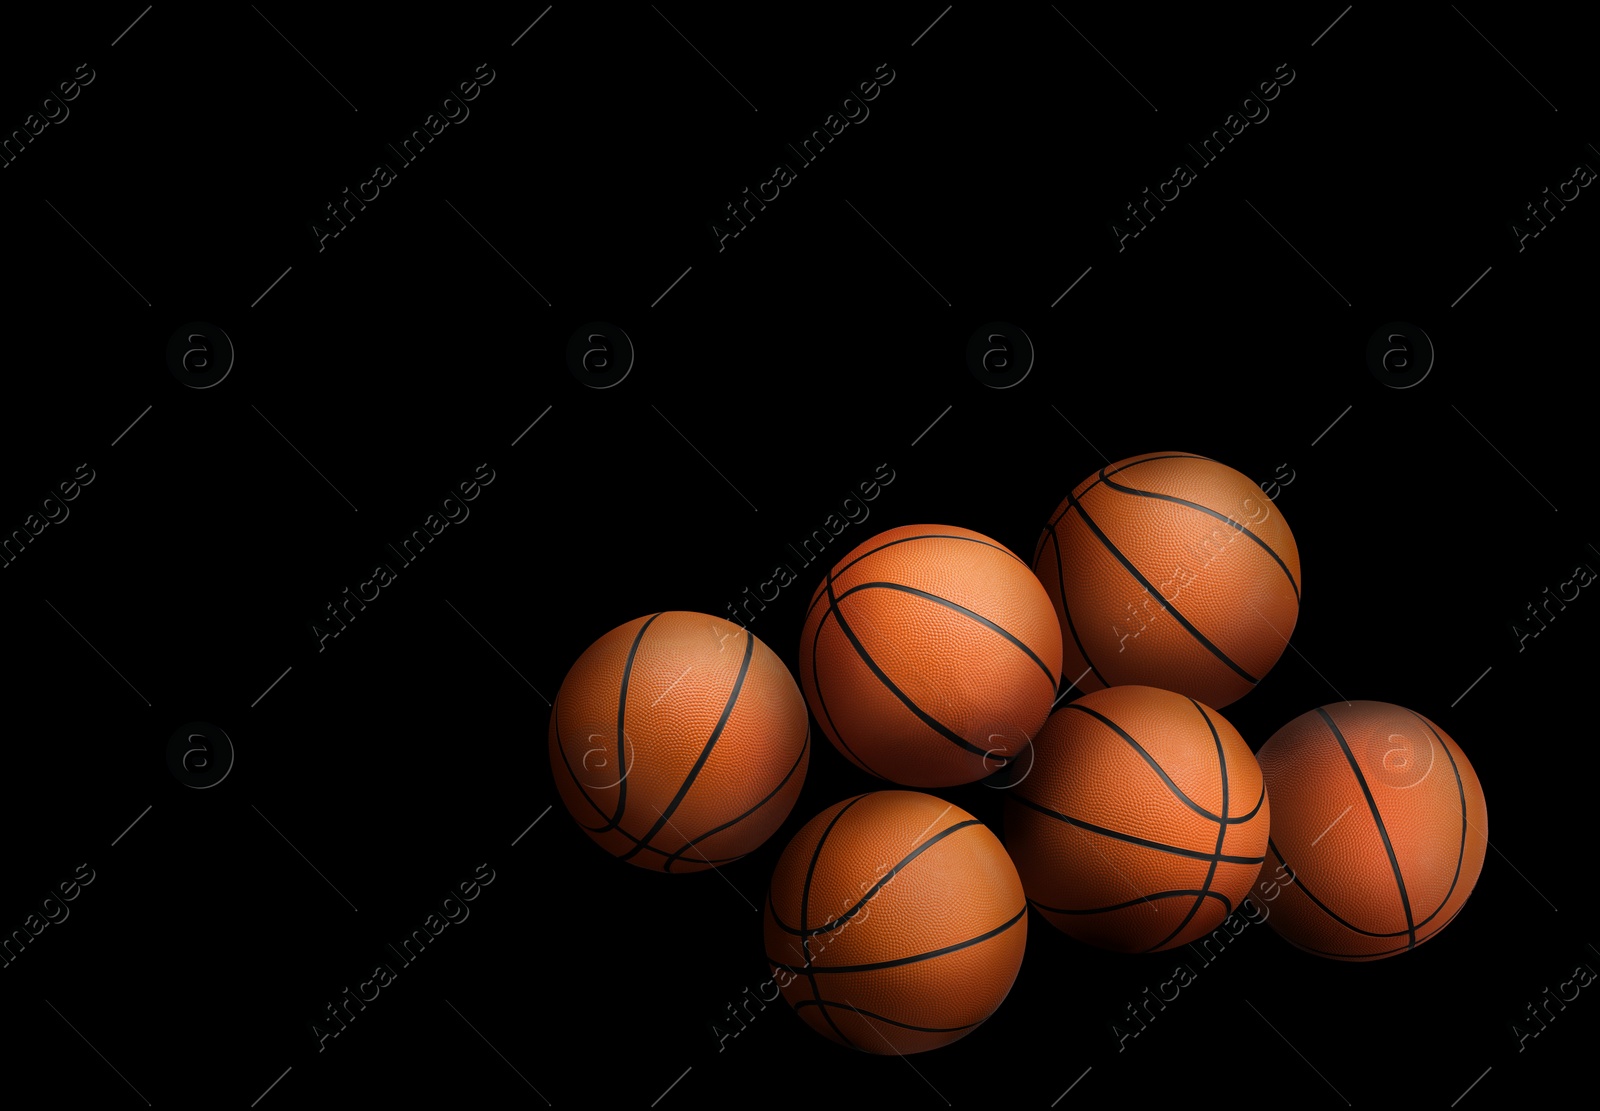 Image of Many orange basketball balls on black background